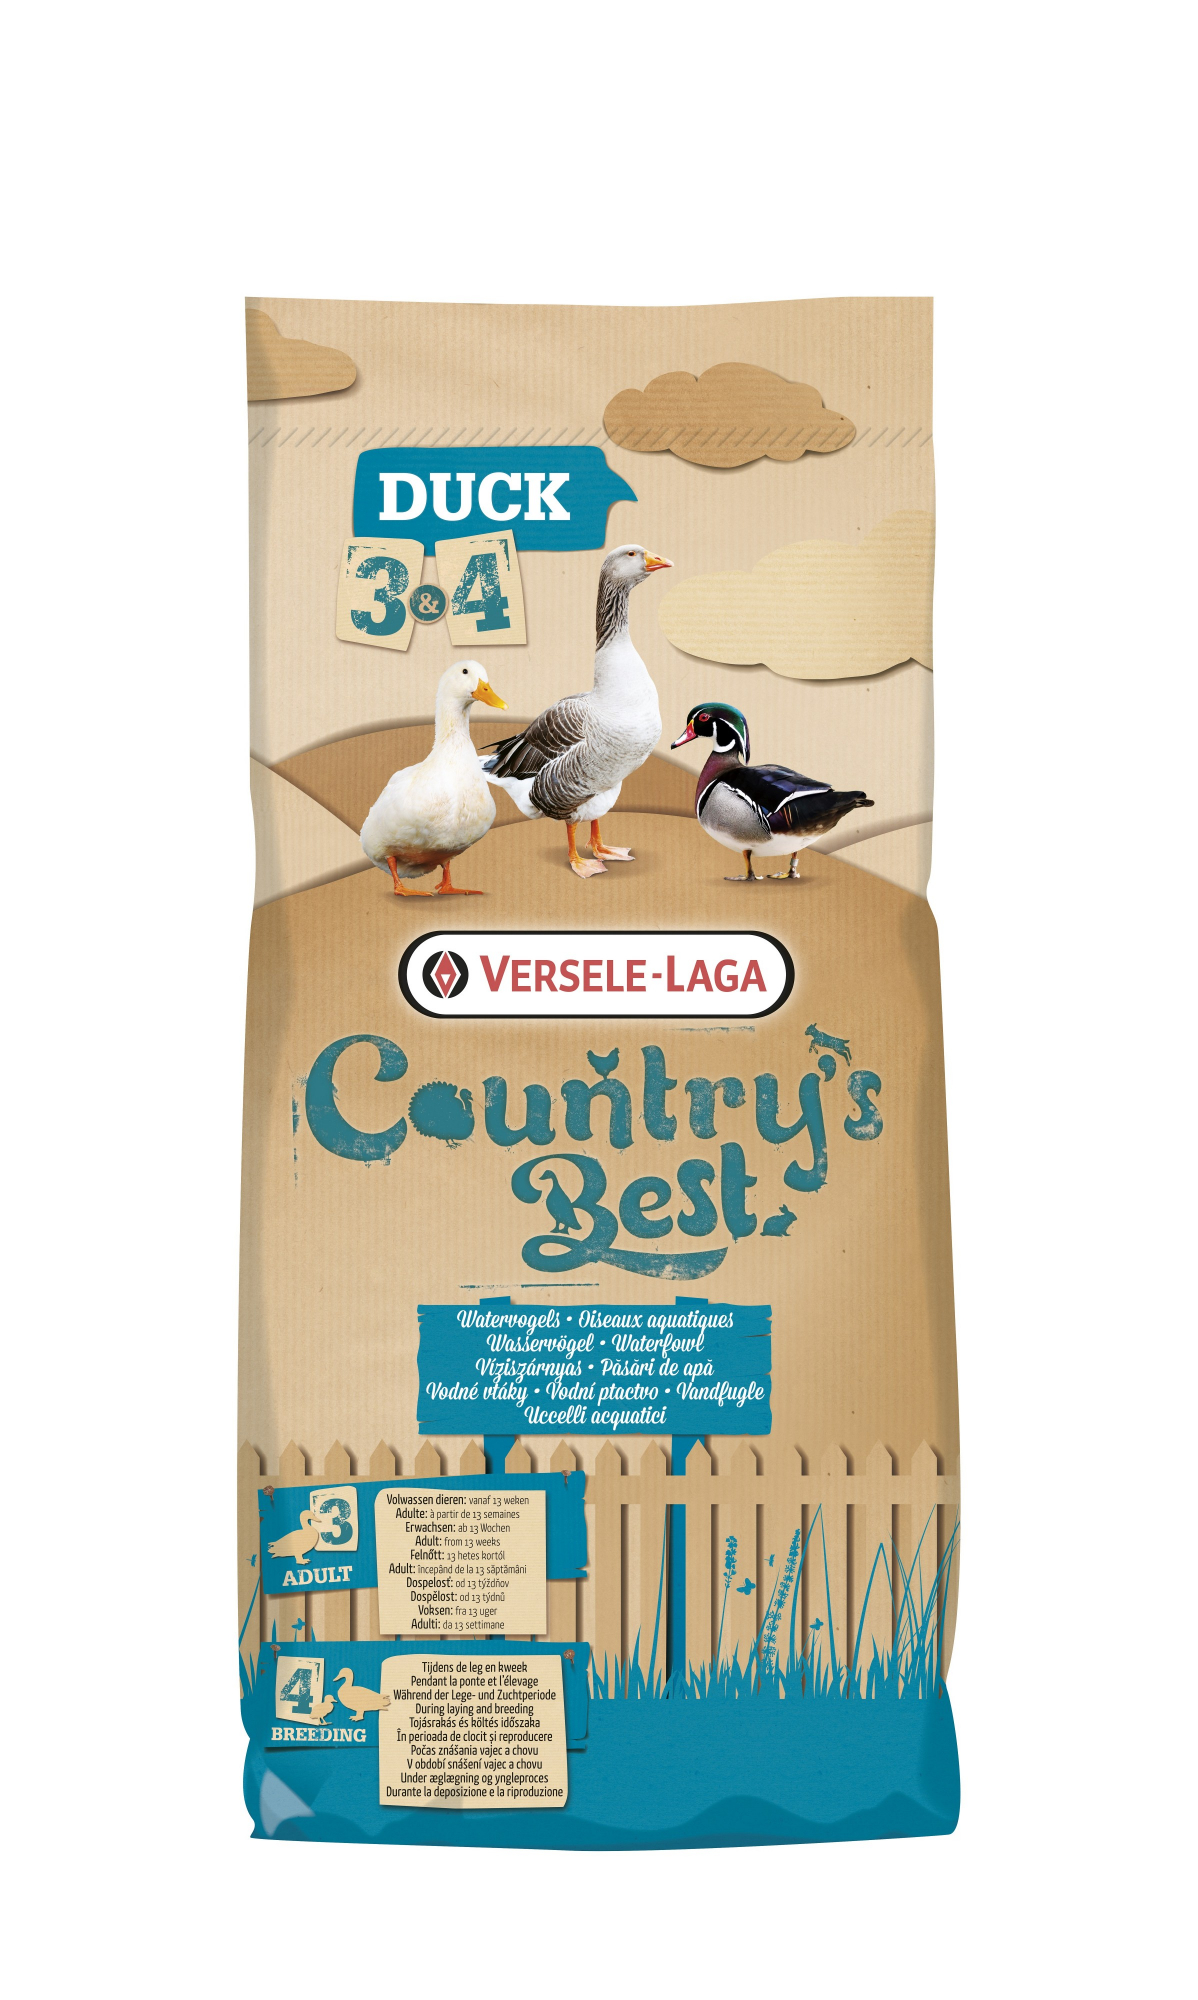 Duck 3 Pellet Country's Best Alimentação para pato e ganso a partir de 13 semanas